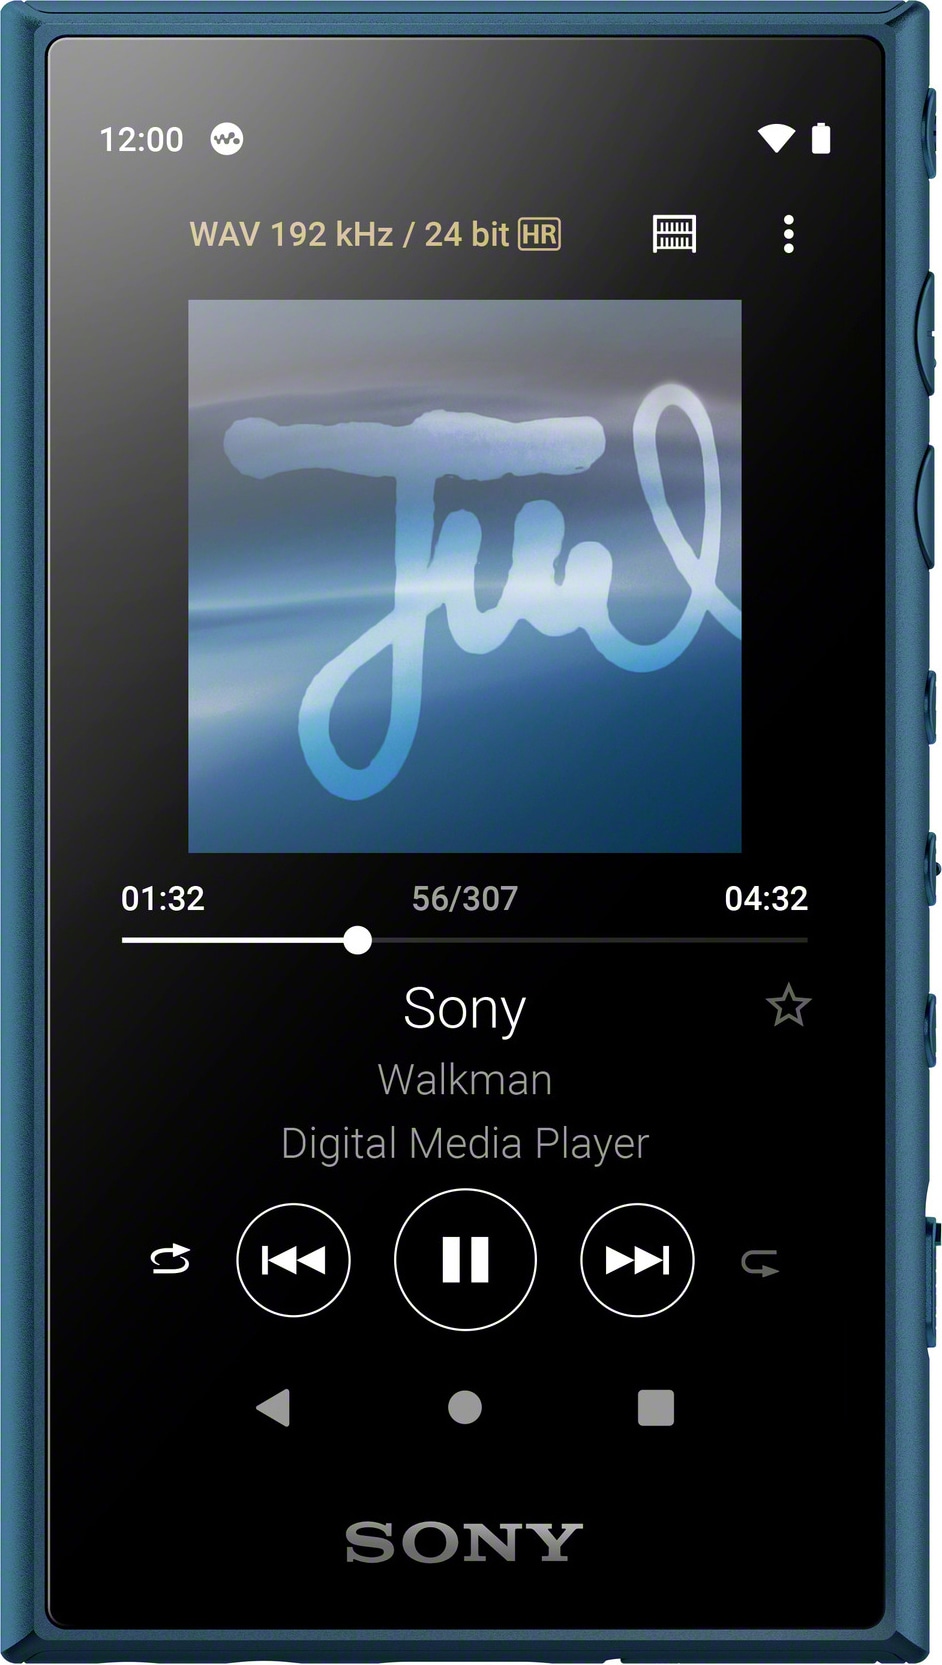 Køb en billig iPod eller MP3-afspiller her - Elgiganten